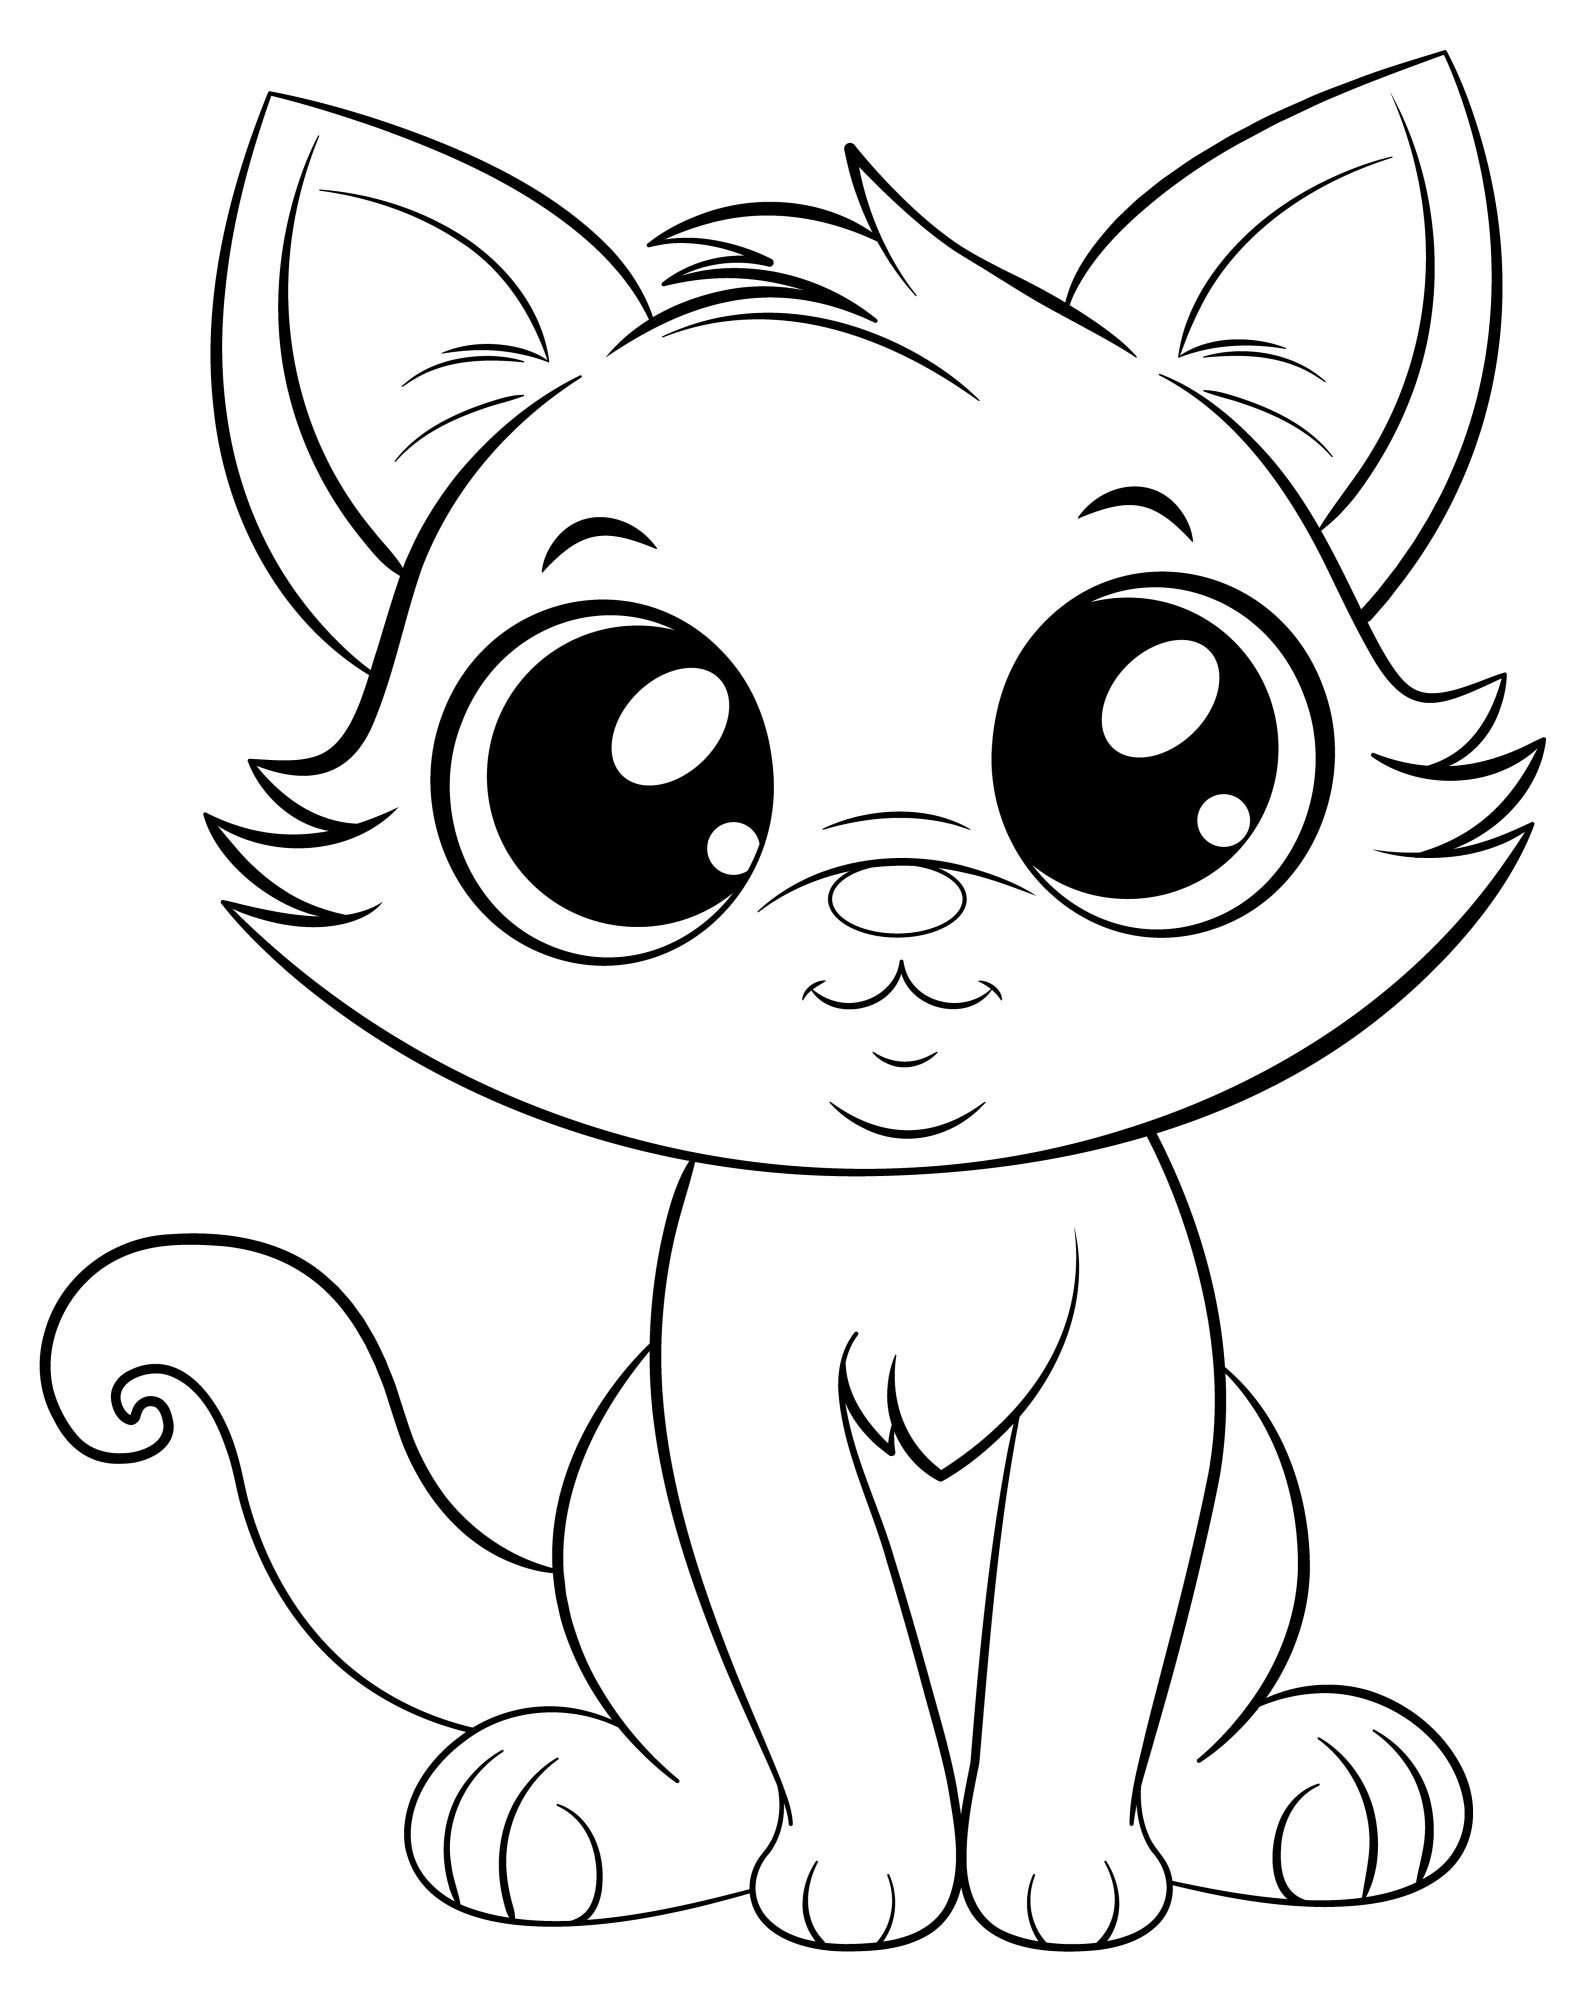 Раскраска для детей: нежная кошка с большими глазами